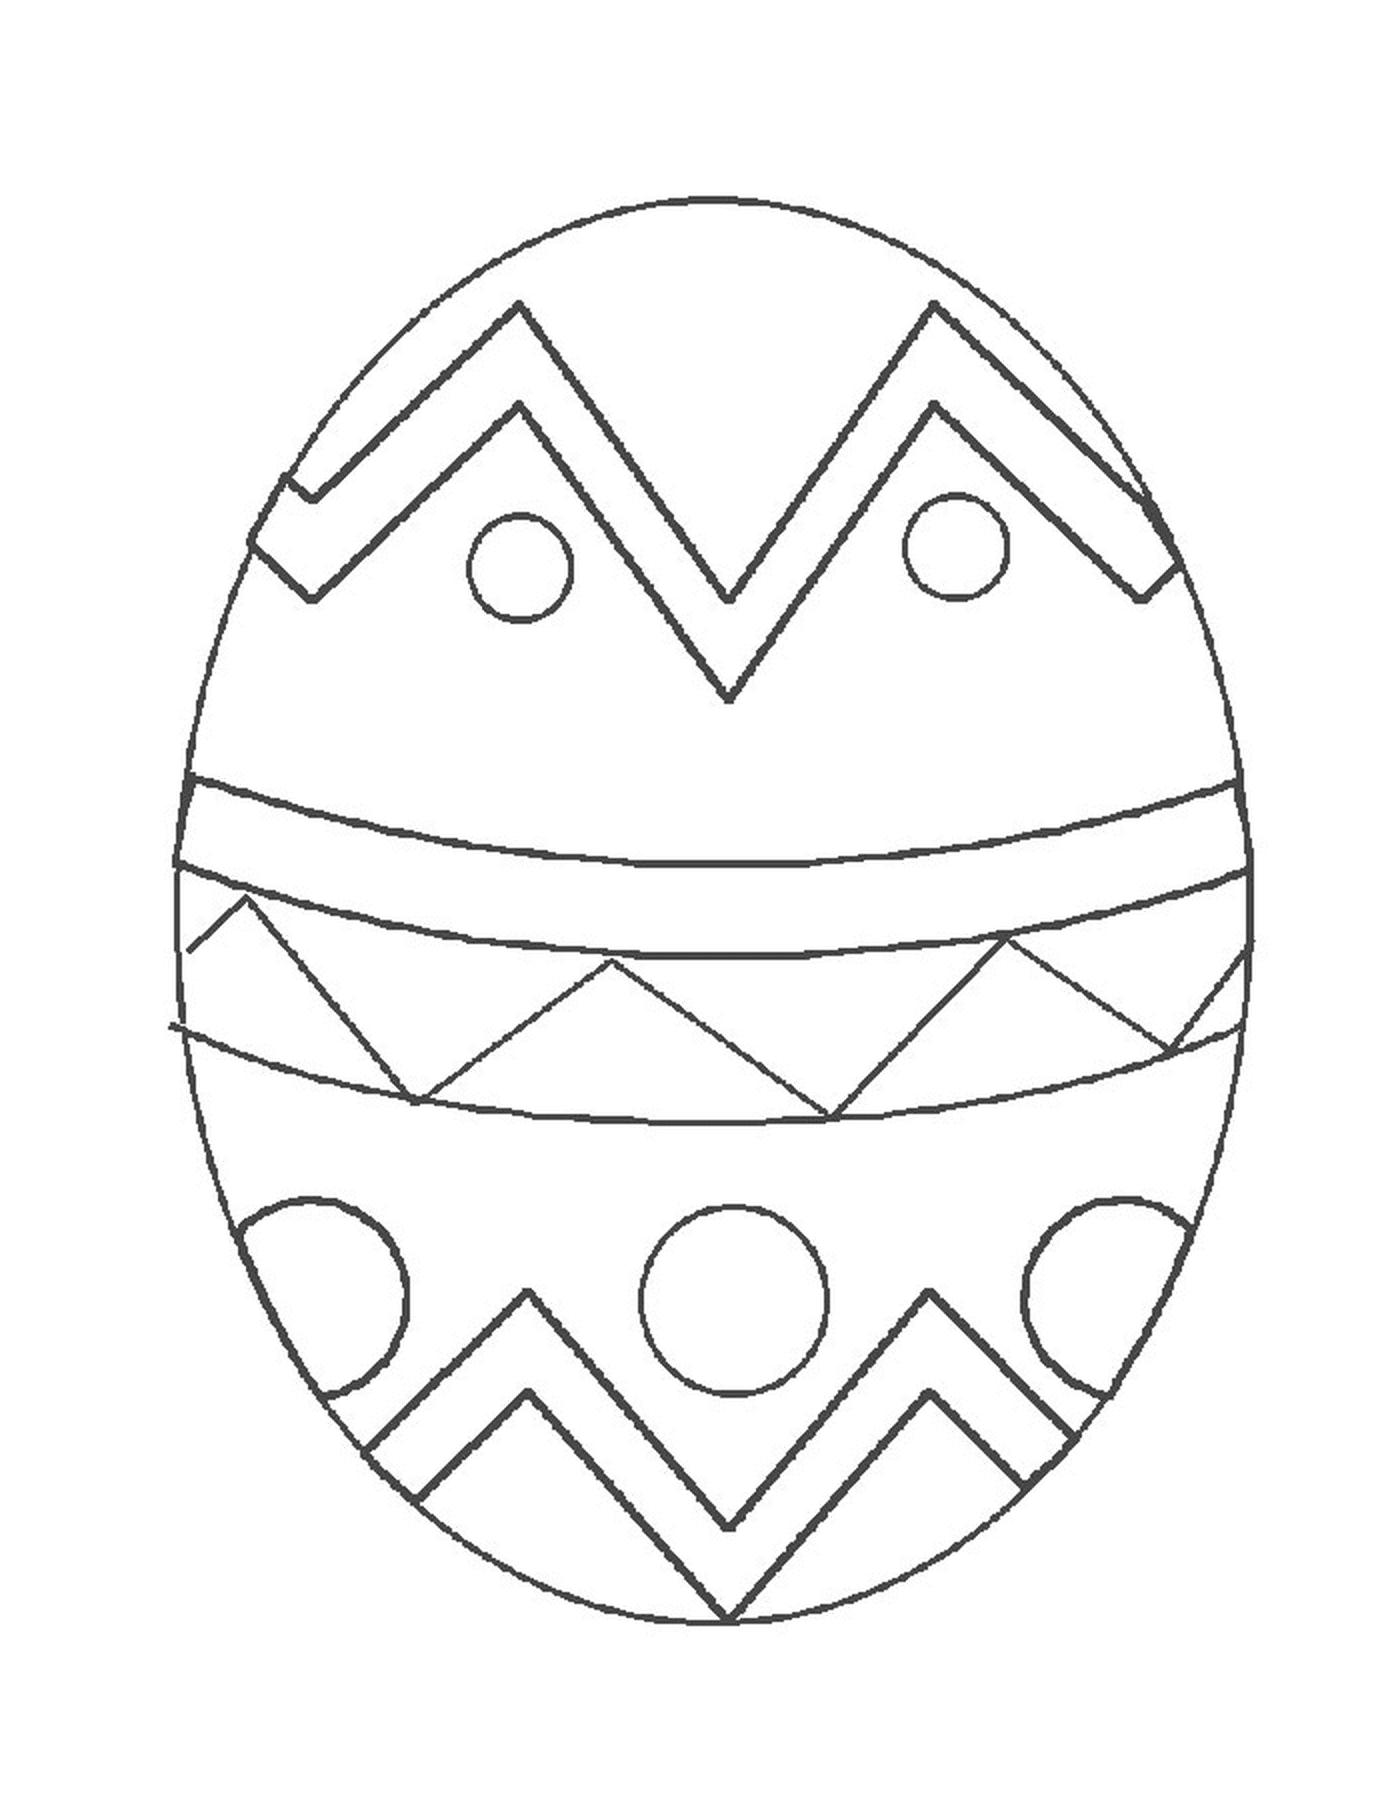  Un huevo de Pascua con un patrón geométrico 